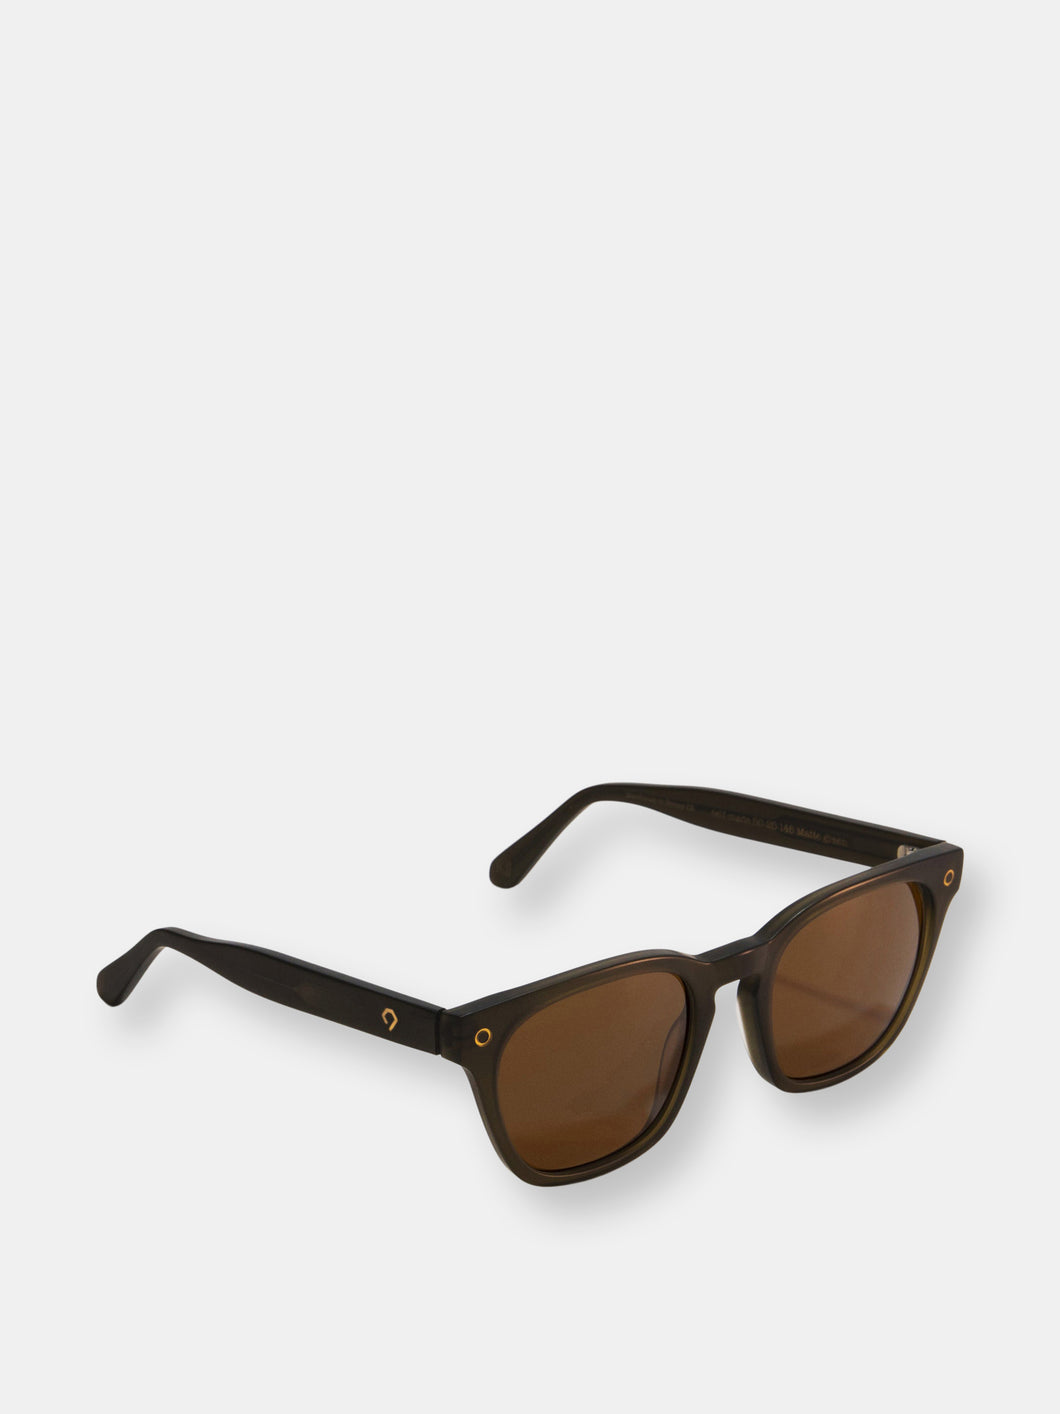 Rockefeller Sunglasses